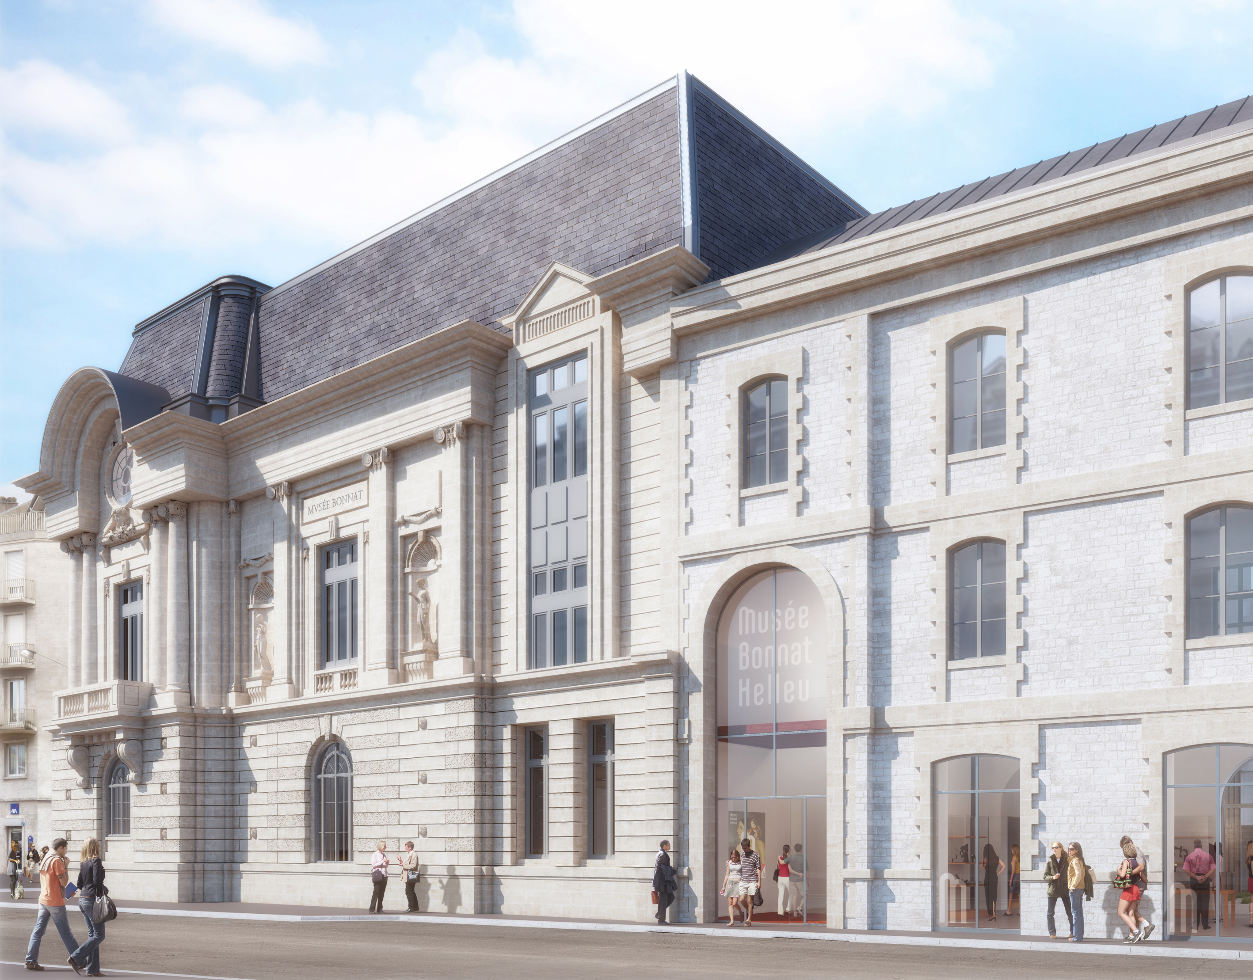 Le nouveau musée Bonnat-Helleu